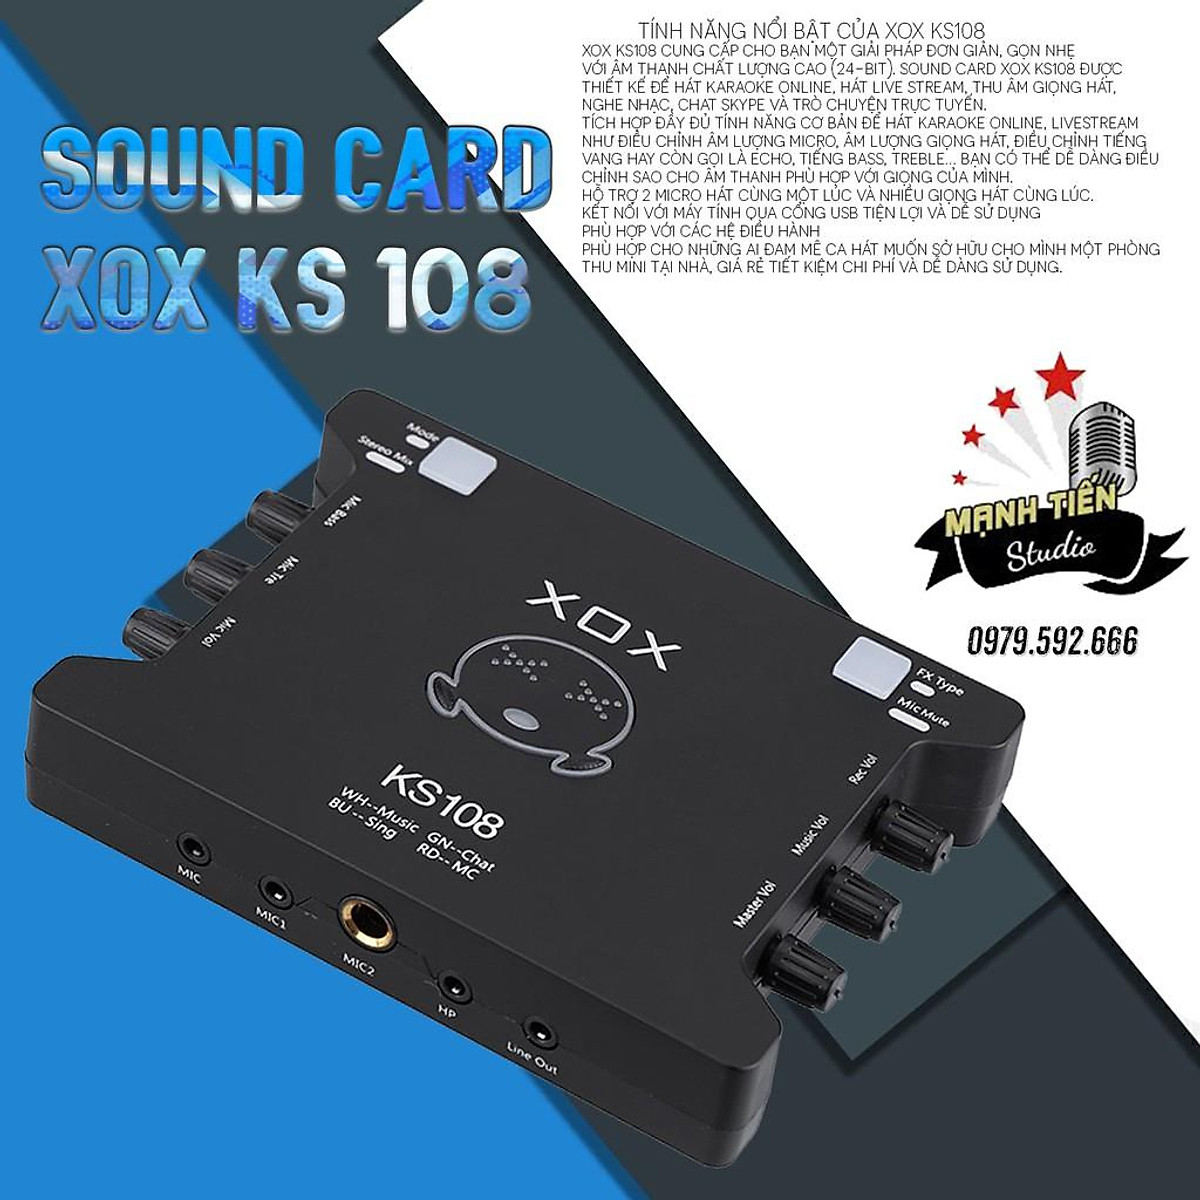 Soundcard thu âm KS108 cho karaoke, livestream: Dòng soundcard thu âm KS108 được thiết kế đặc biệt cho các nhu cầu thu âm chuyên nghiệp, trong đó bao gồm cả karaoke và livestream. Với chất lượng âm thanh tuyệt vời và tính năng linh hoạt, KS108 sẽ giúp bạn tạo ra những sản phẩm âm nhạc đầy chất lượng. Còn chần chờ gì nữa, hãy sở hữu ngay soundcard thu âm KS108 để thực hiện đam mê của bạn.